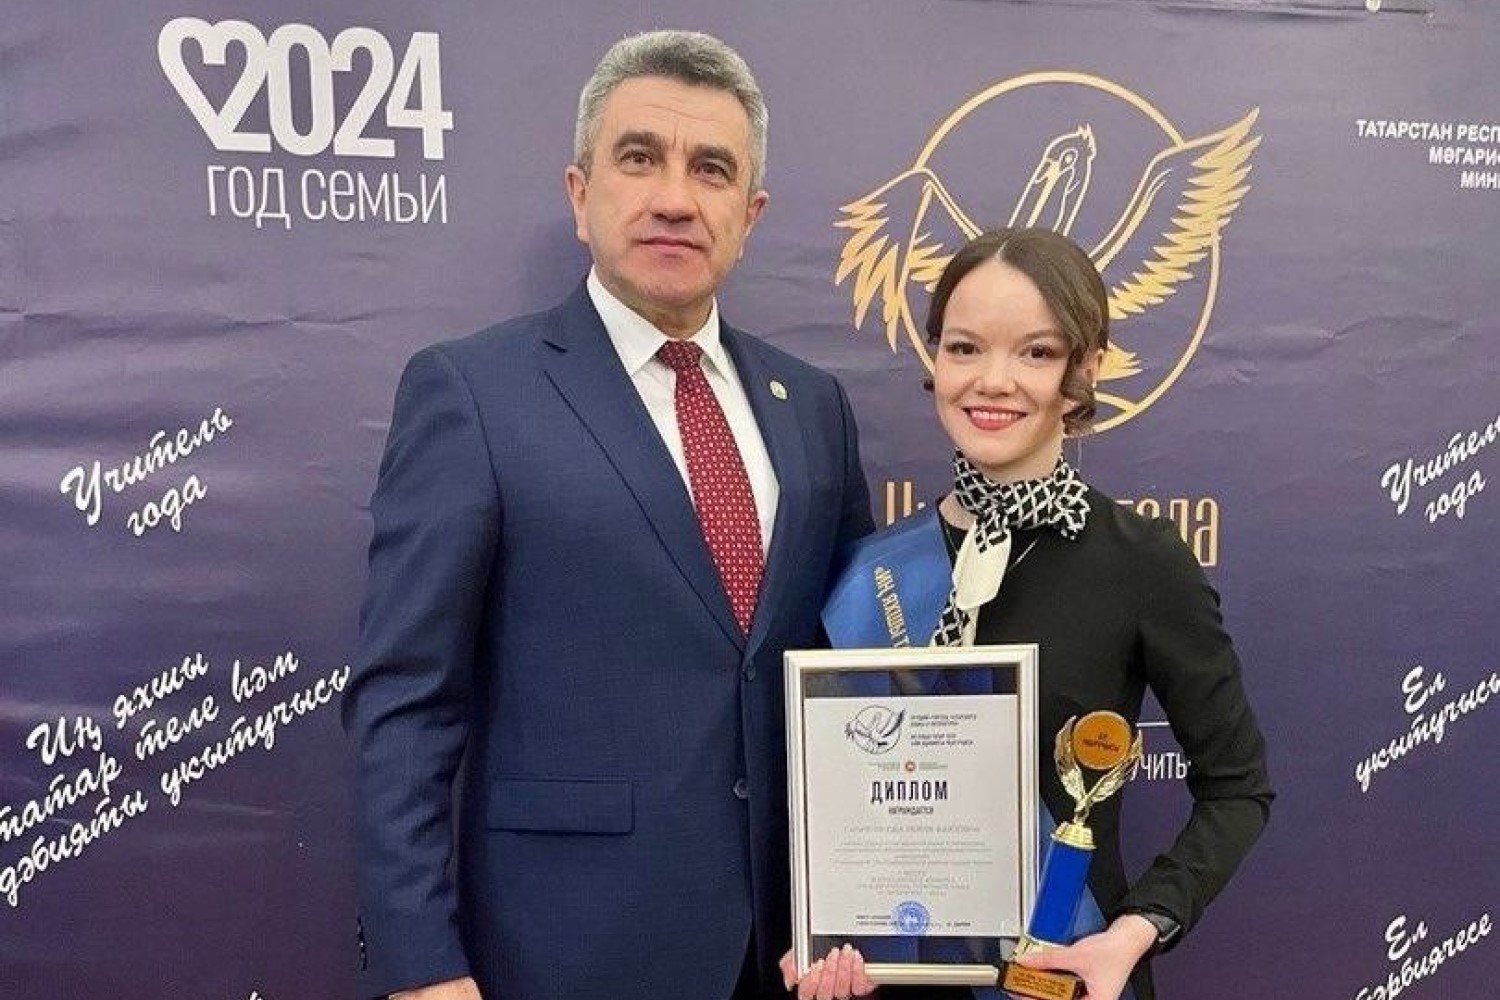 В Республике Татарстан назвали лучшего учителя татарского языка